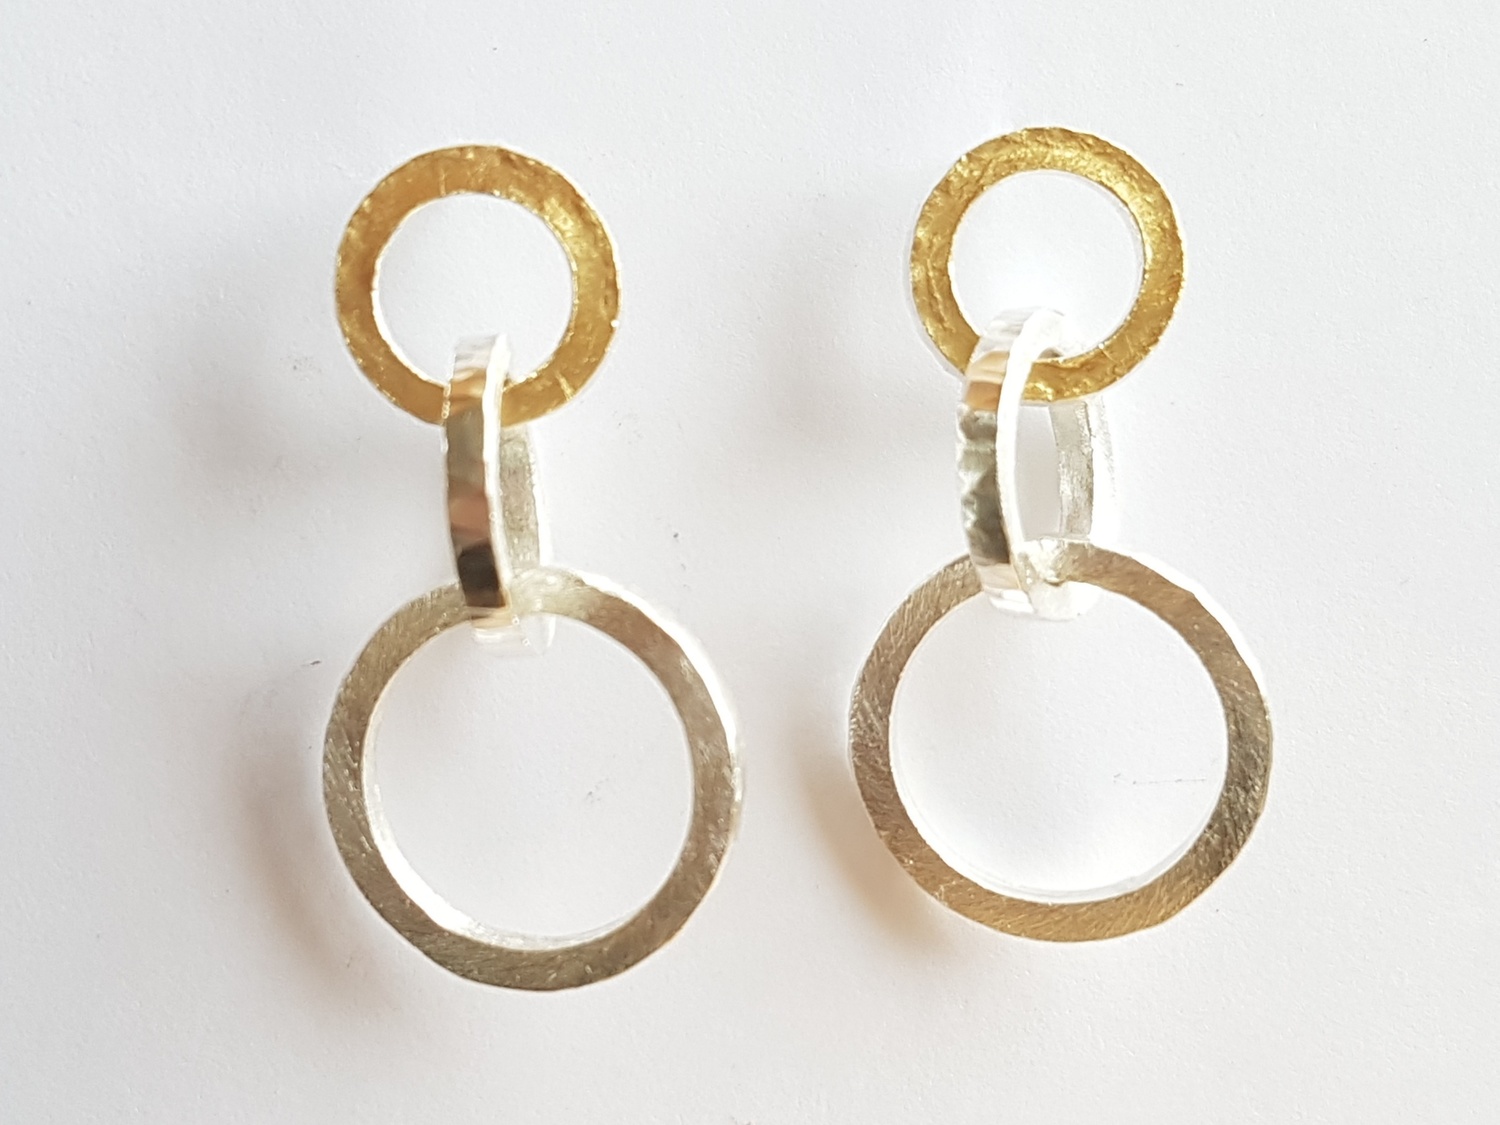 Interlaced 3 loop earrings